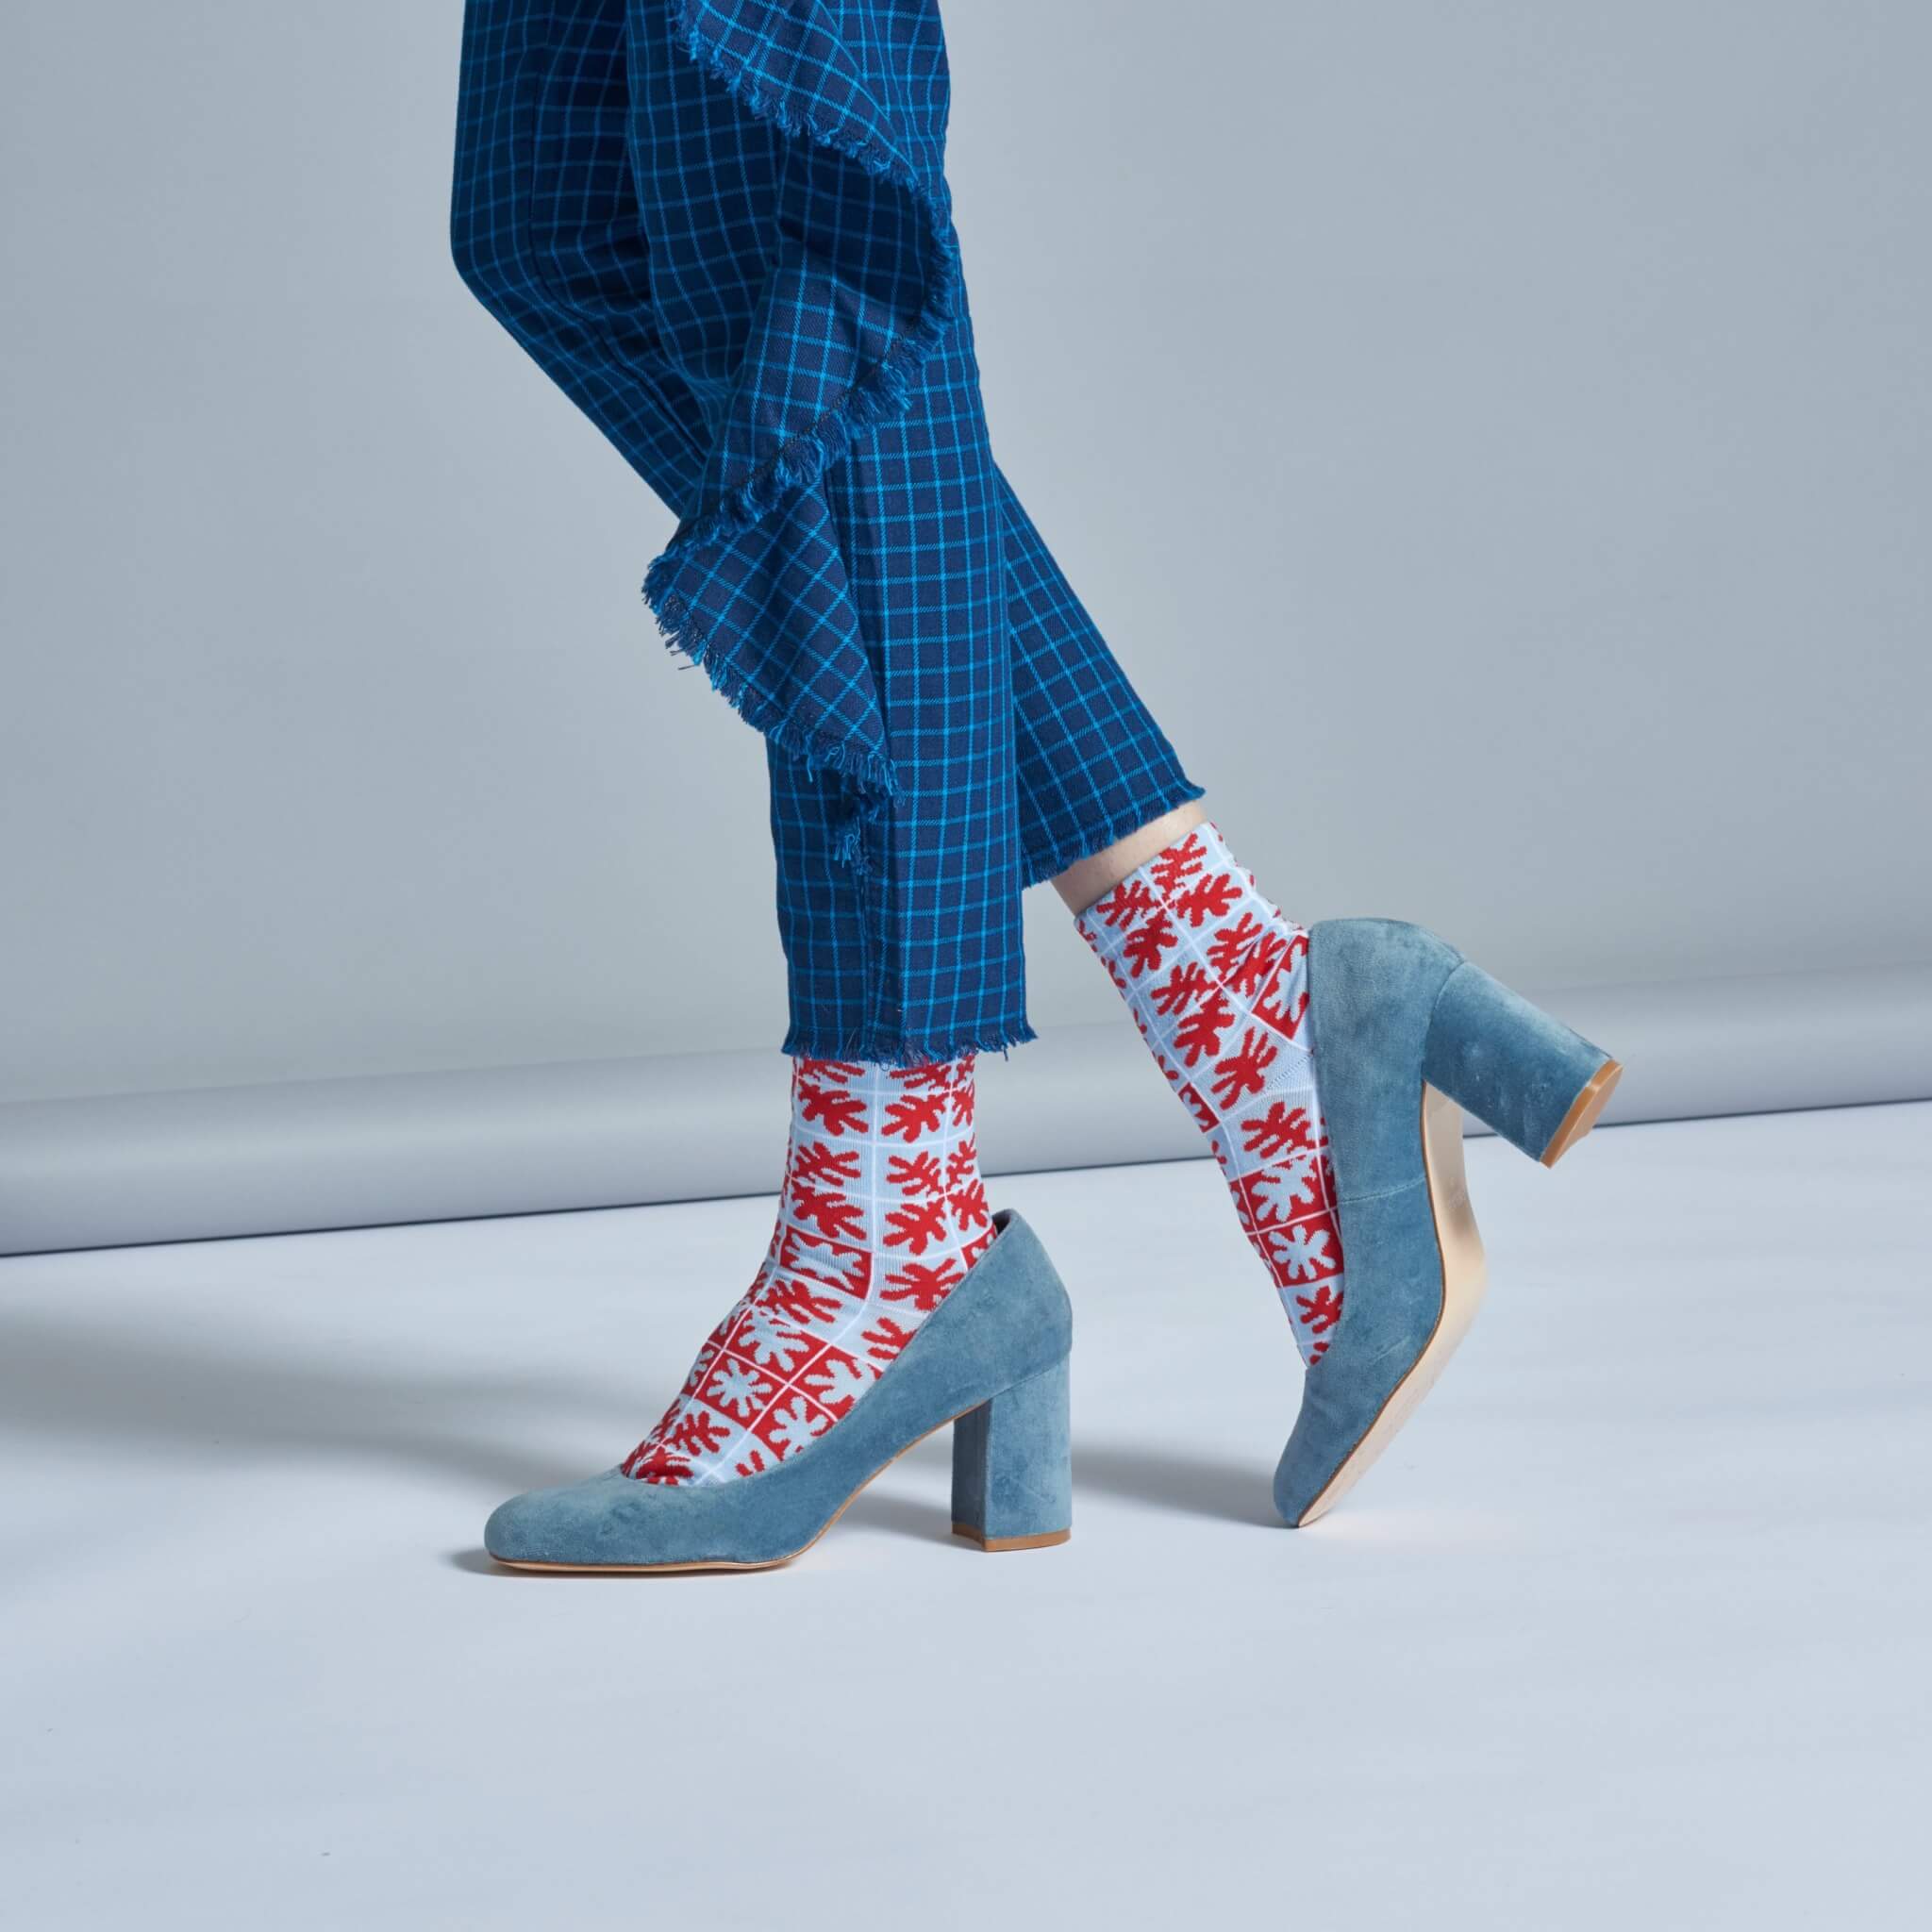 Dámské červené teplé ponožky Happy Socks Emilia  // kolekce Hysteria